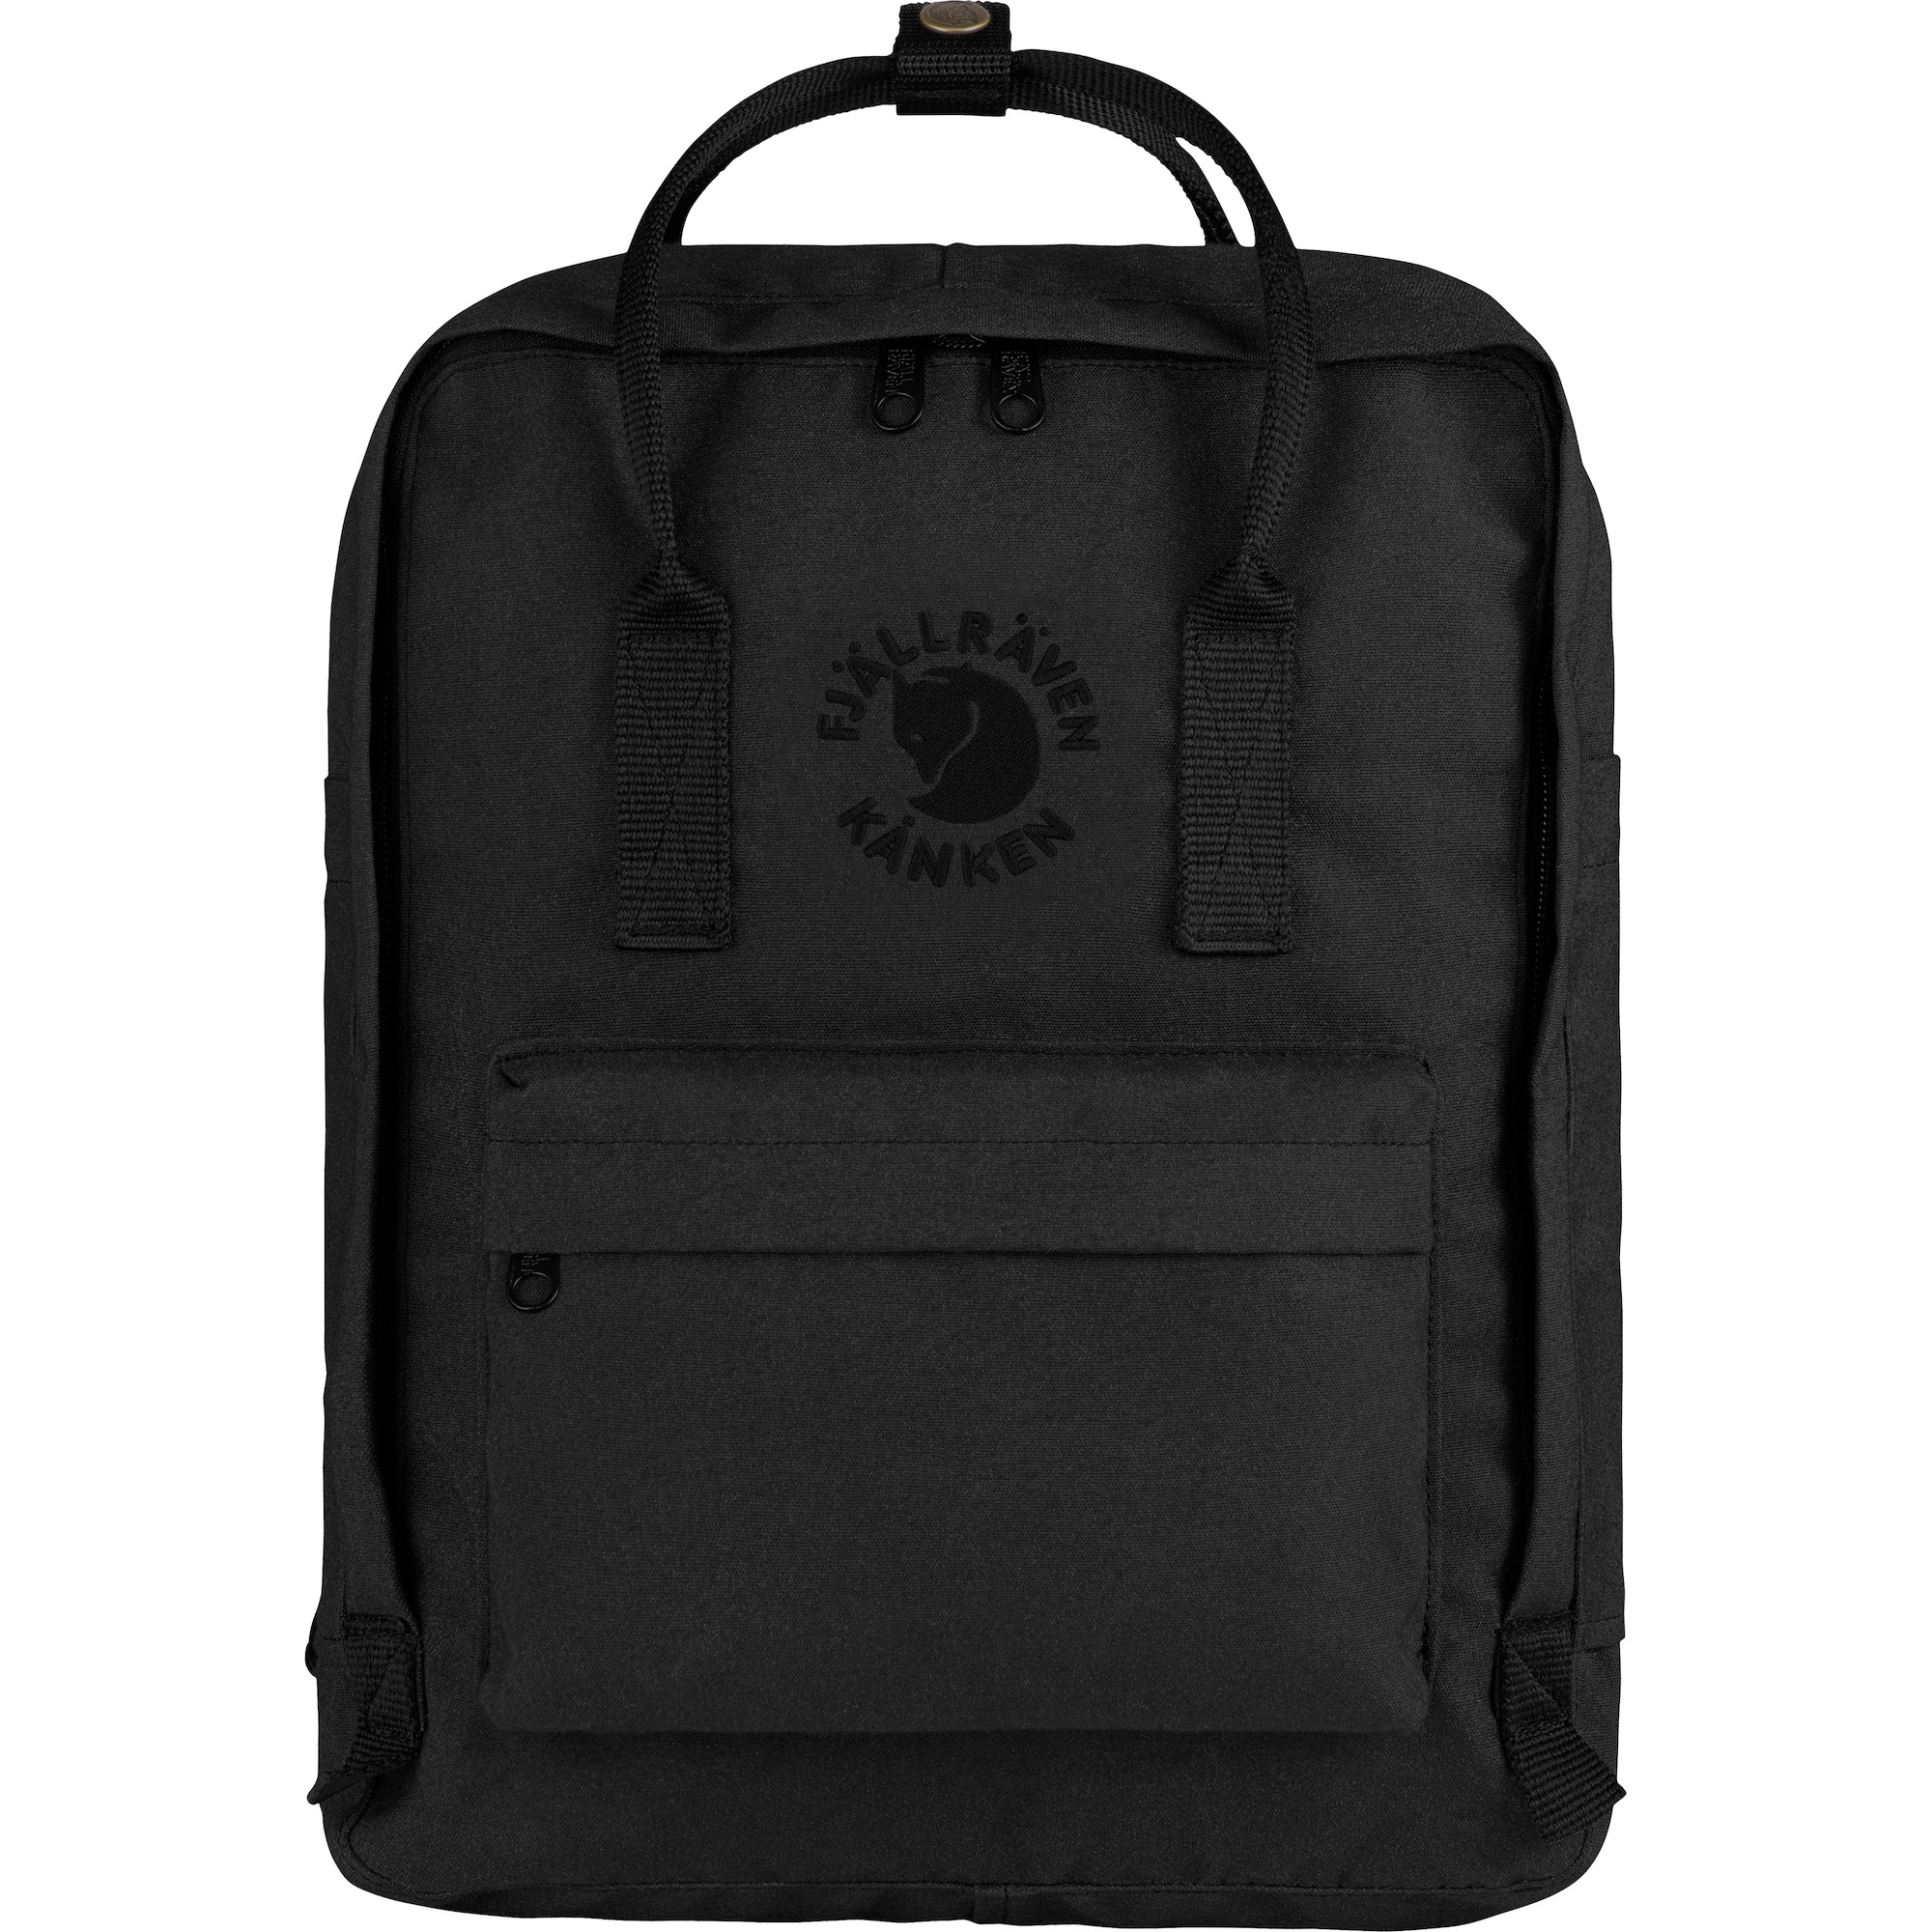 Fjallraven Kanken Black 16L Classic Backpack New with tag 100% Genuine UK Seller 